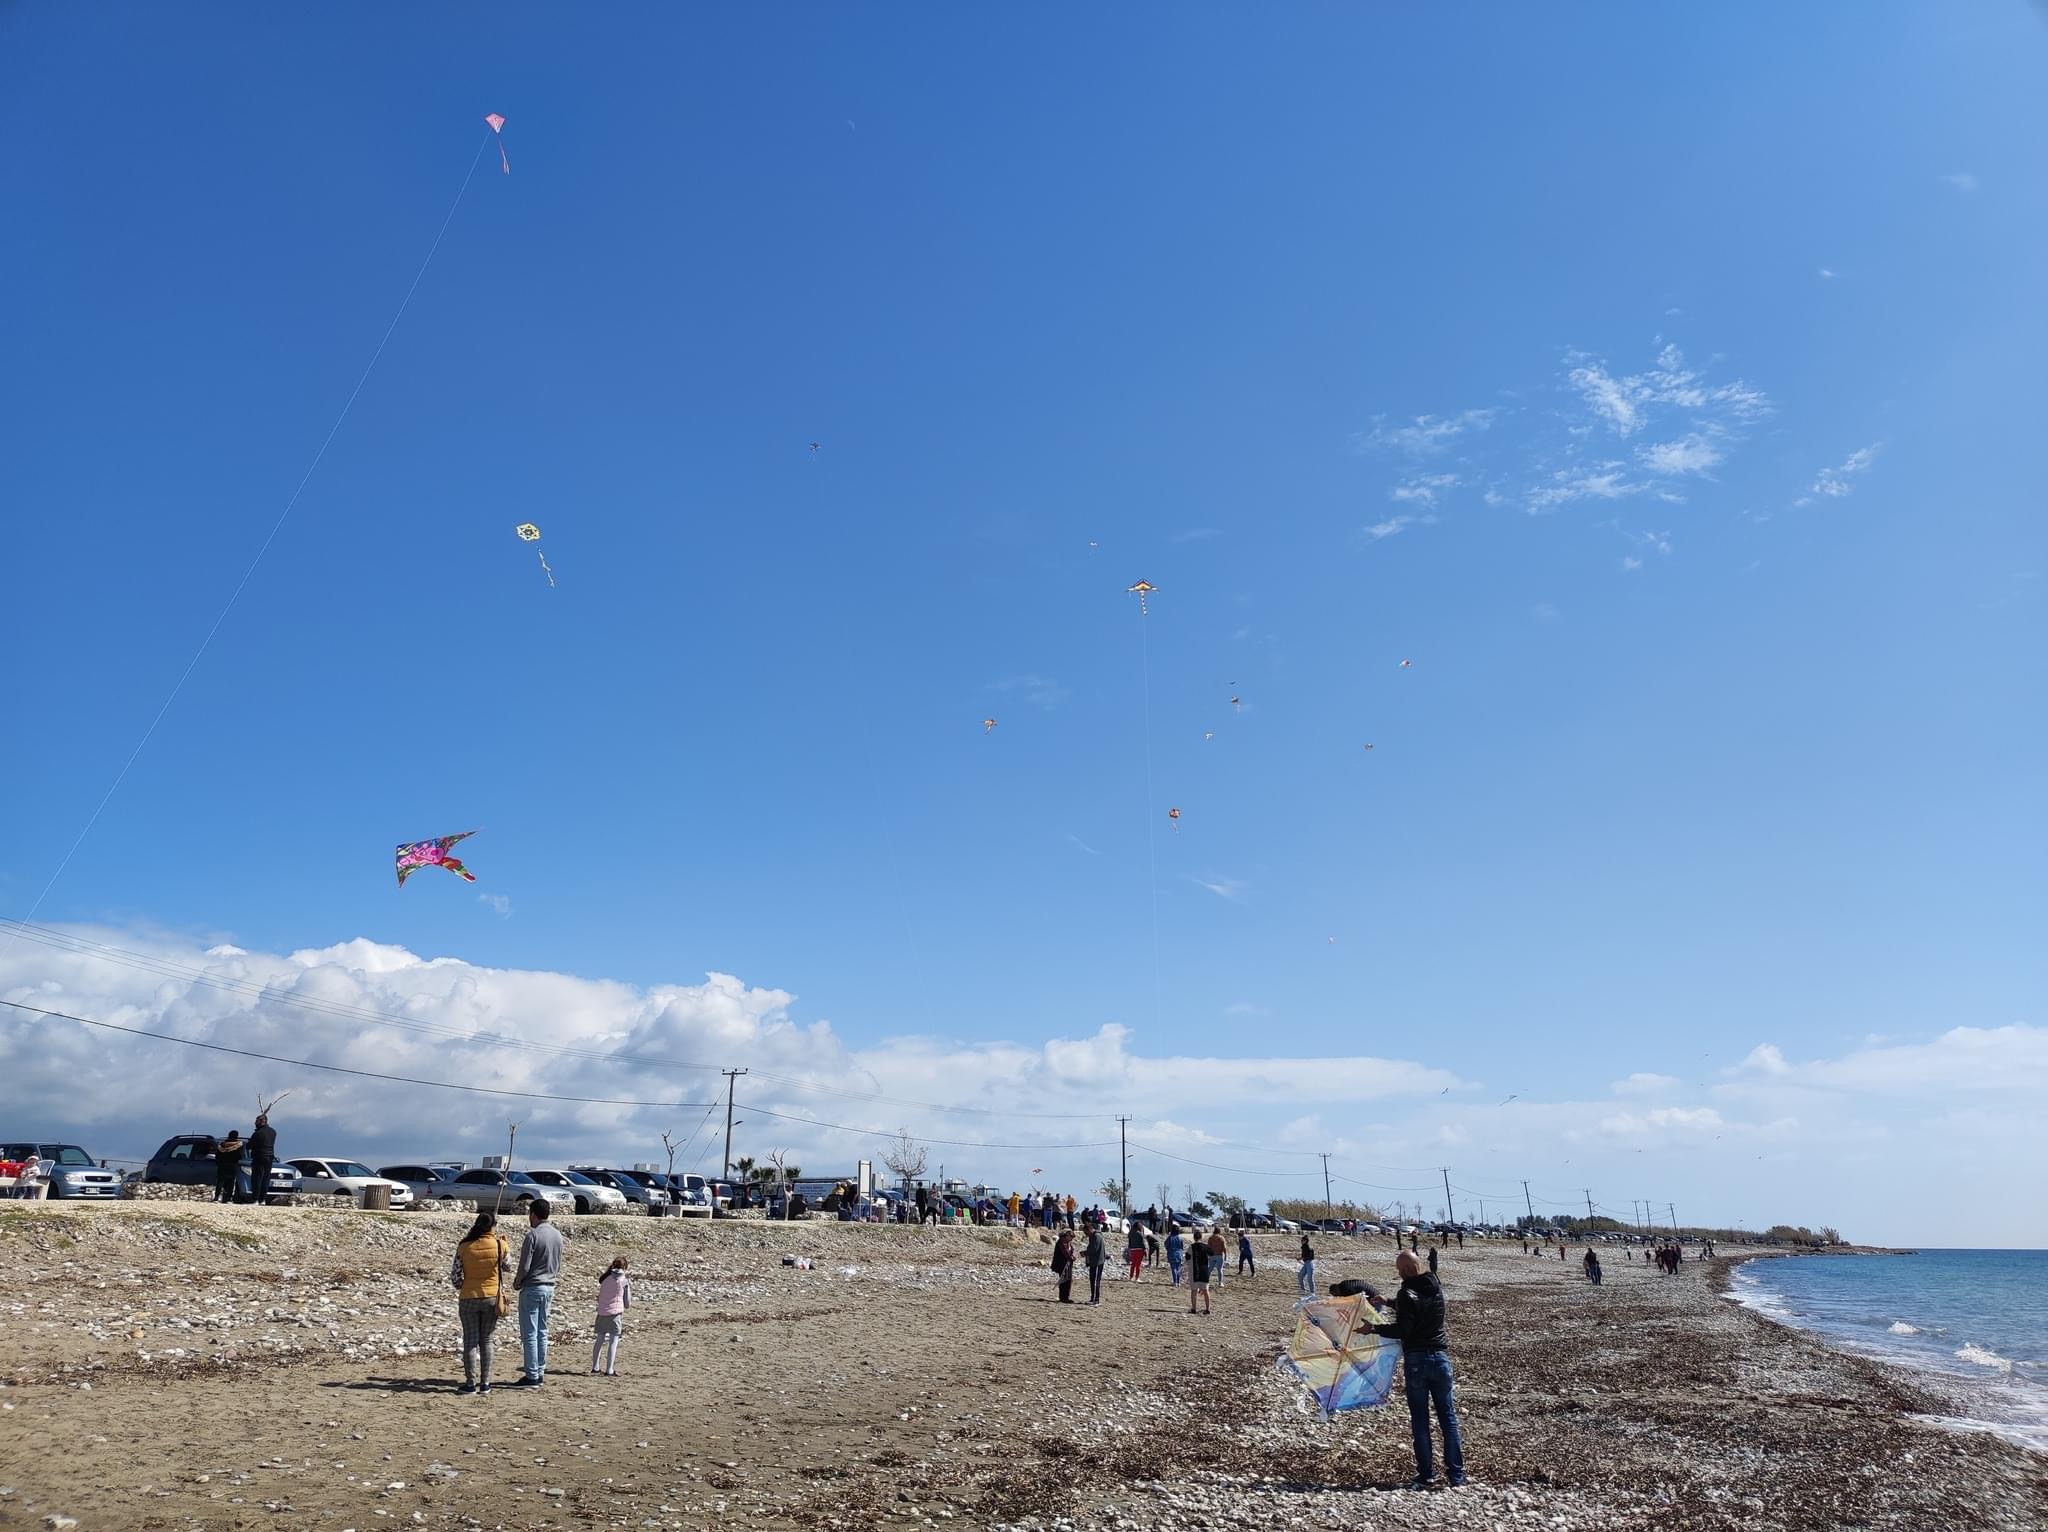 Καθαρά Δευτέρα στη Δημοτική παραλία Γεροσκηπου με δωρεάν λουκουμάδες σε ολους